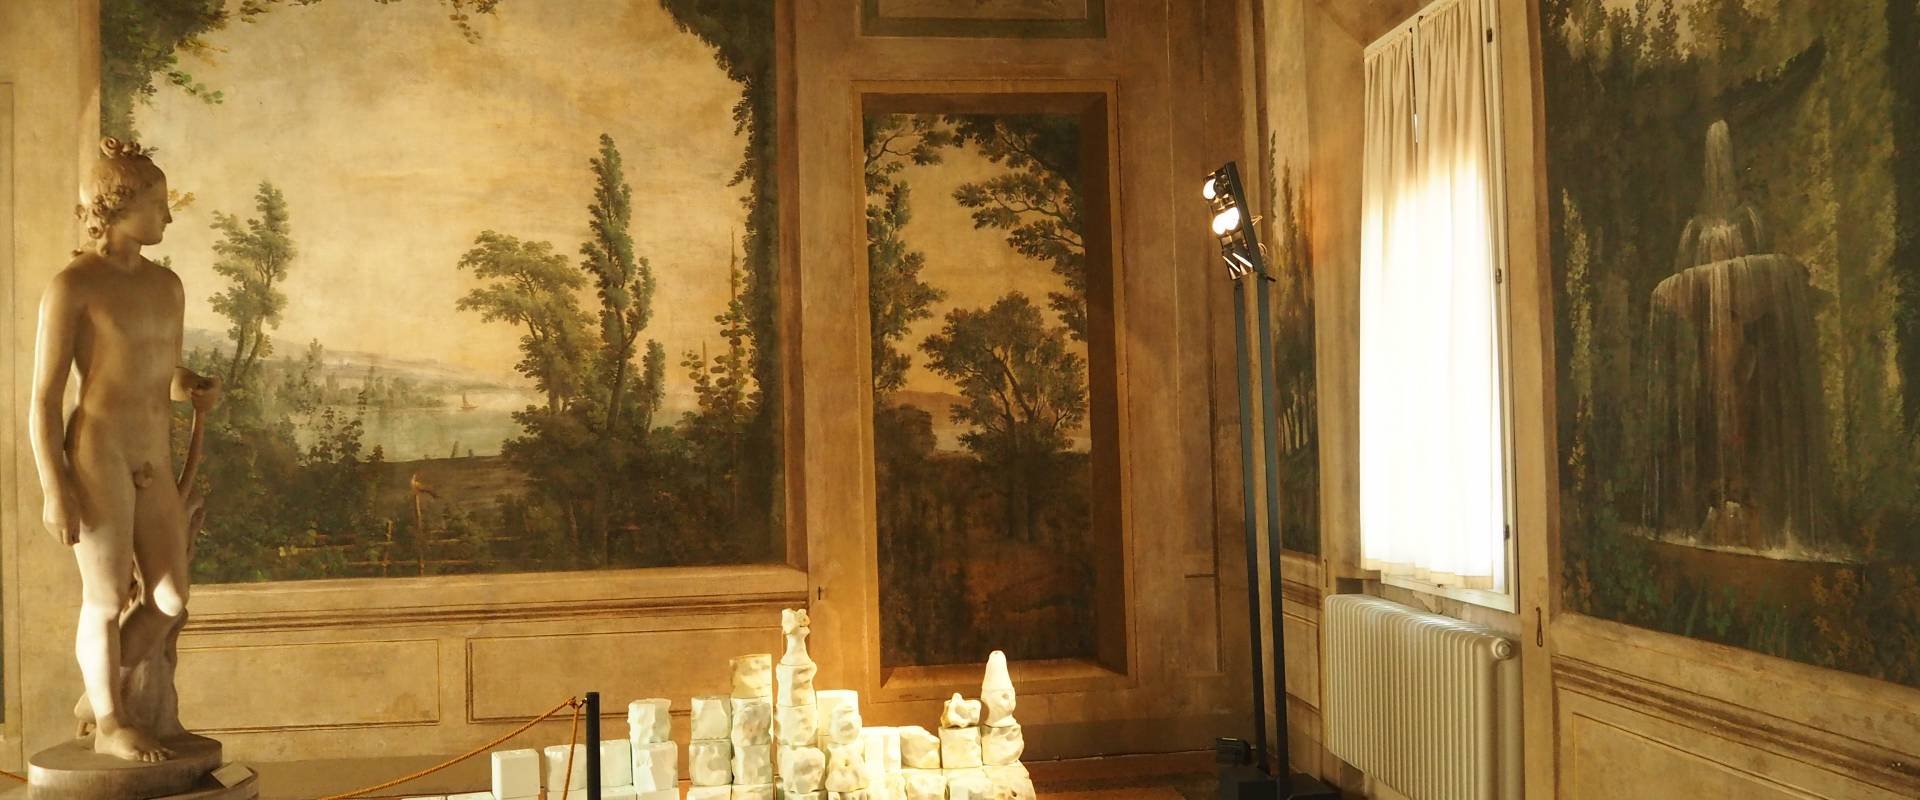 Sala Boschereccia di Palazzo d'Accursio con Apollino di Canova 2 photo by MarkPagl